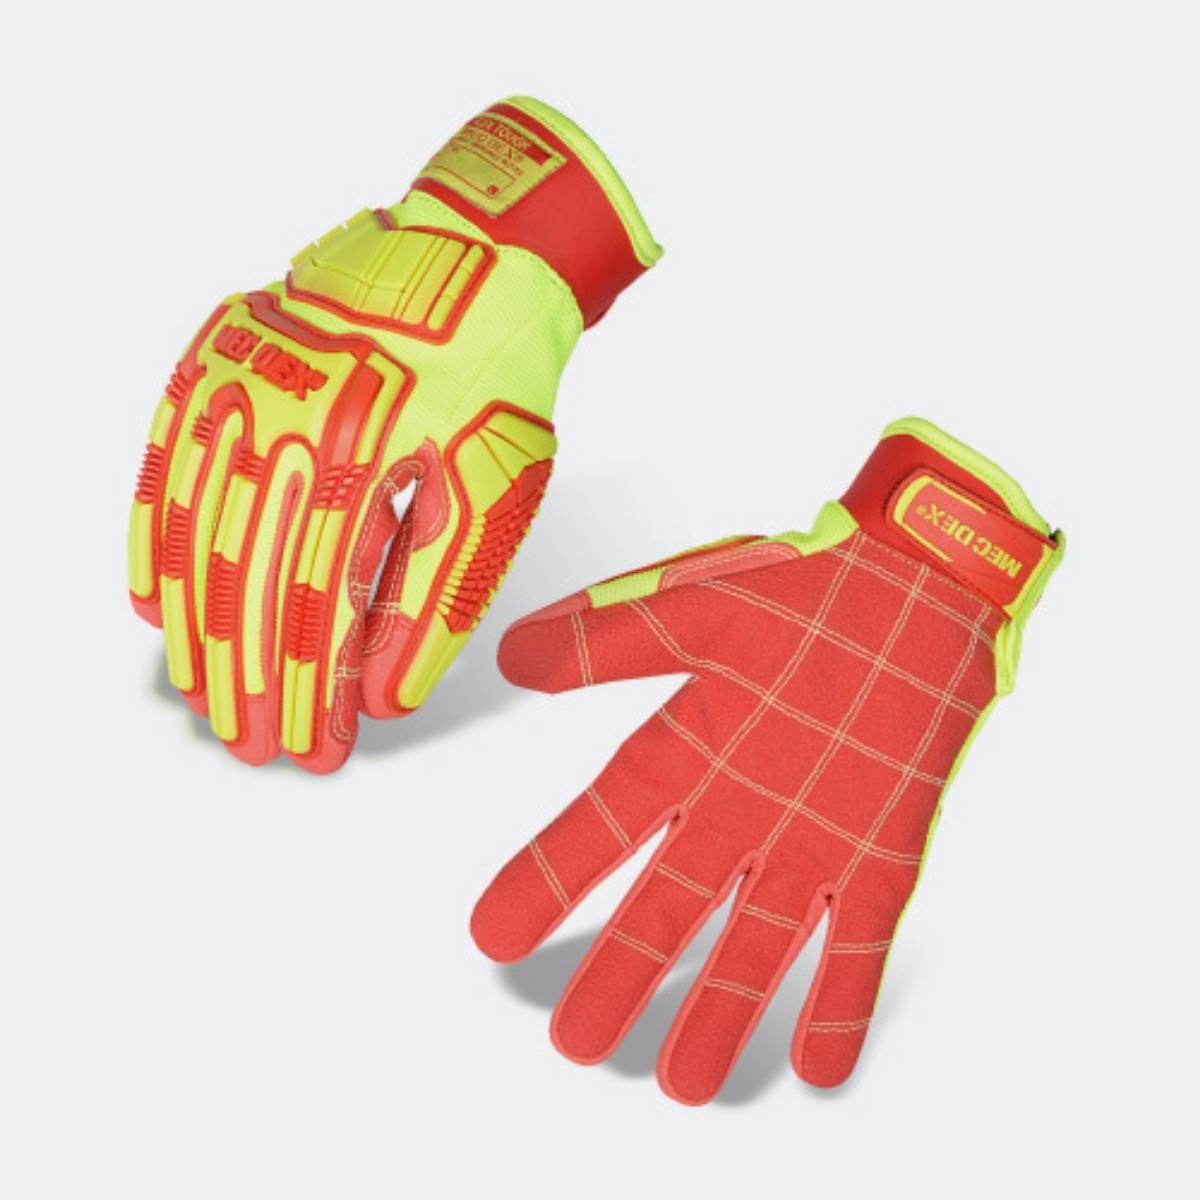 Mecdex Flex Tough Cut F Gloves PR-871 (Pair)